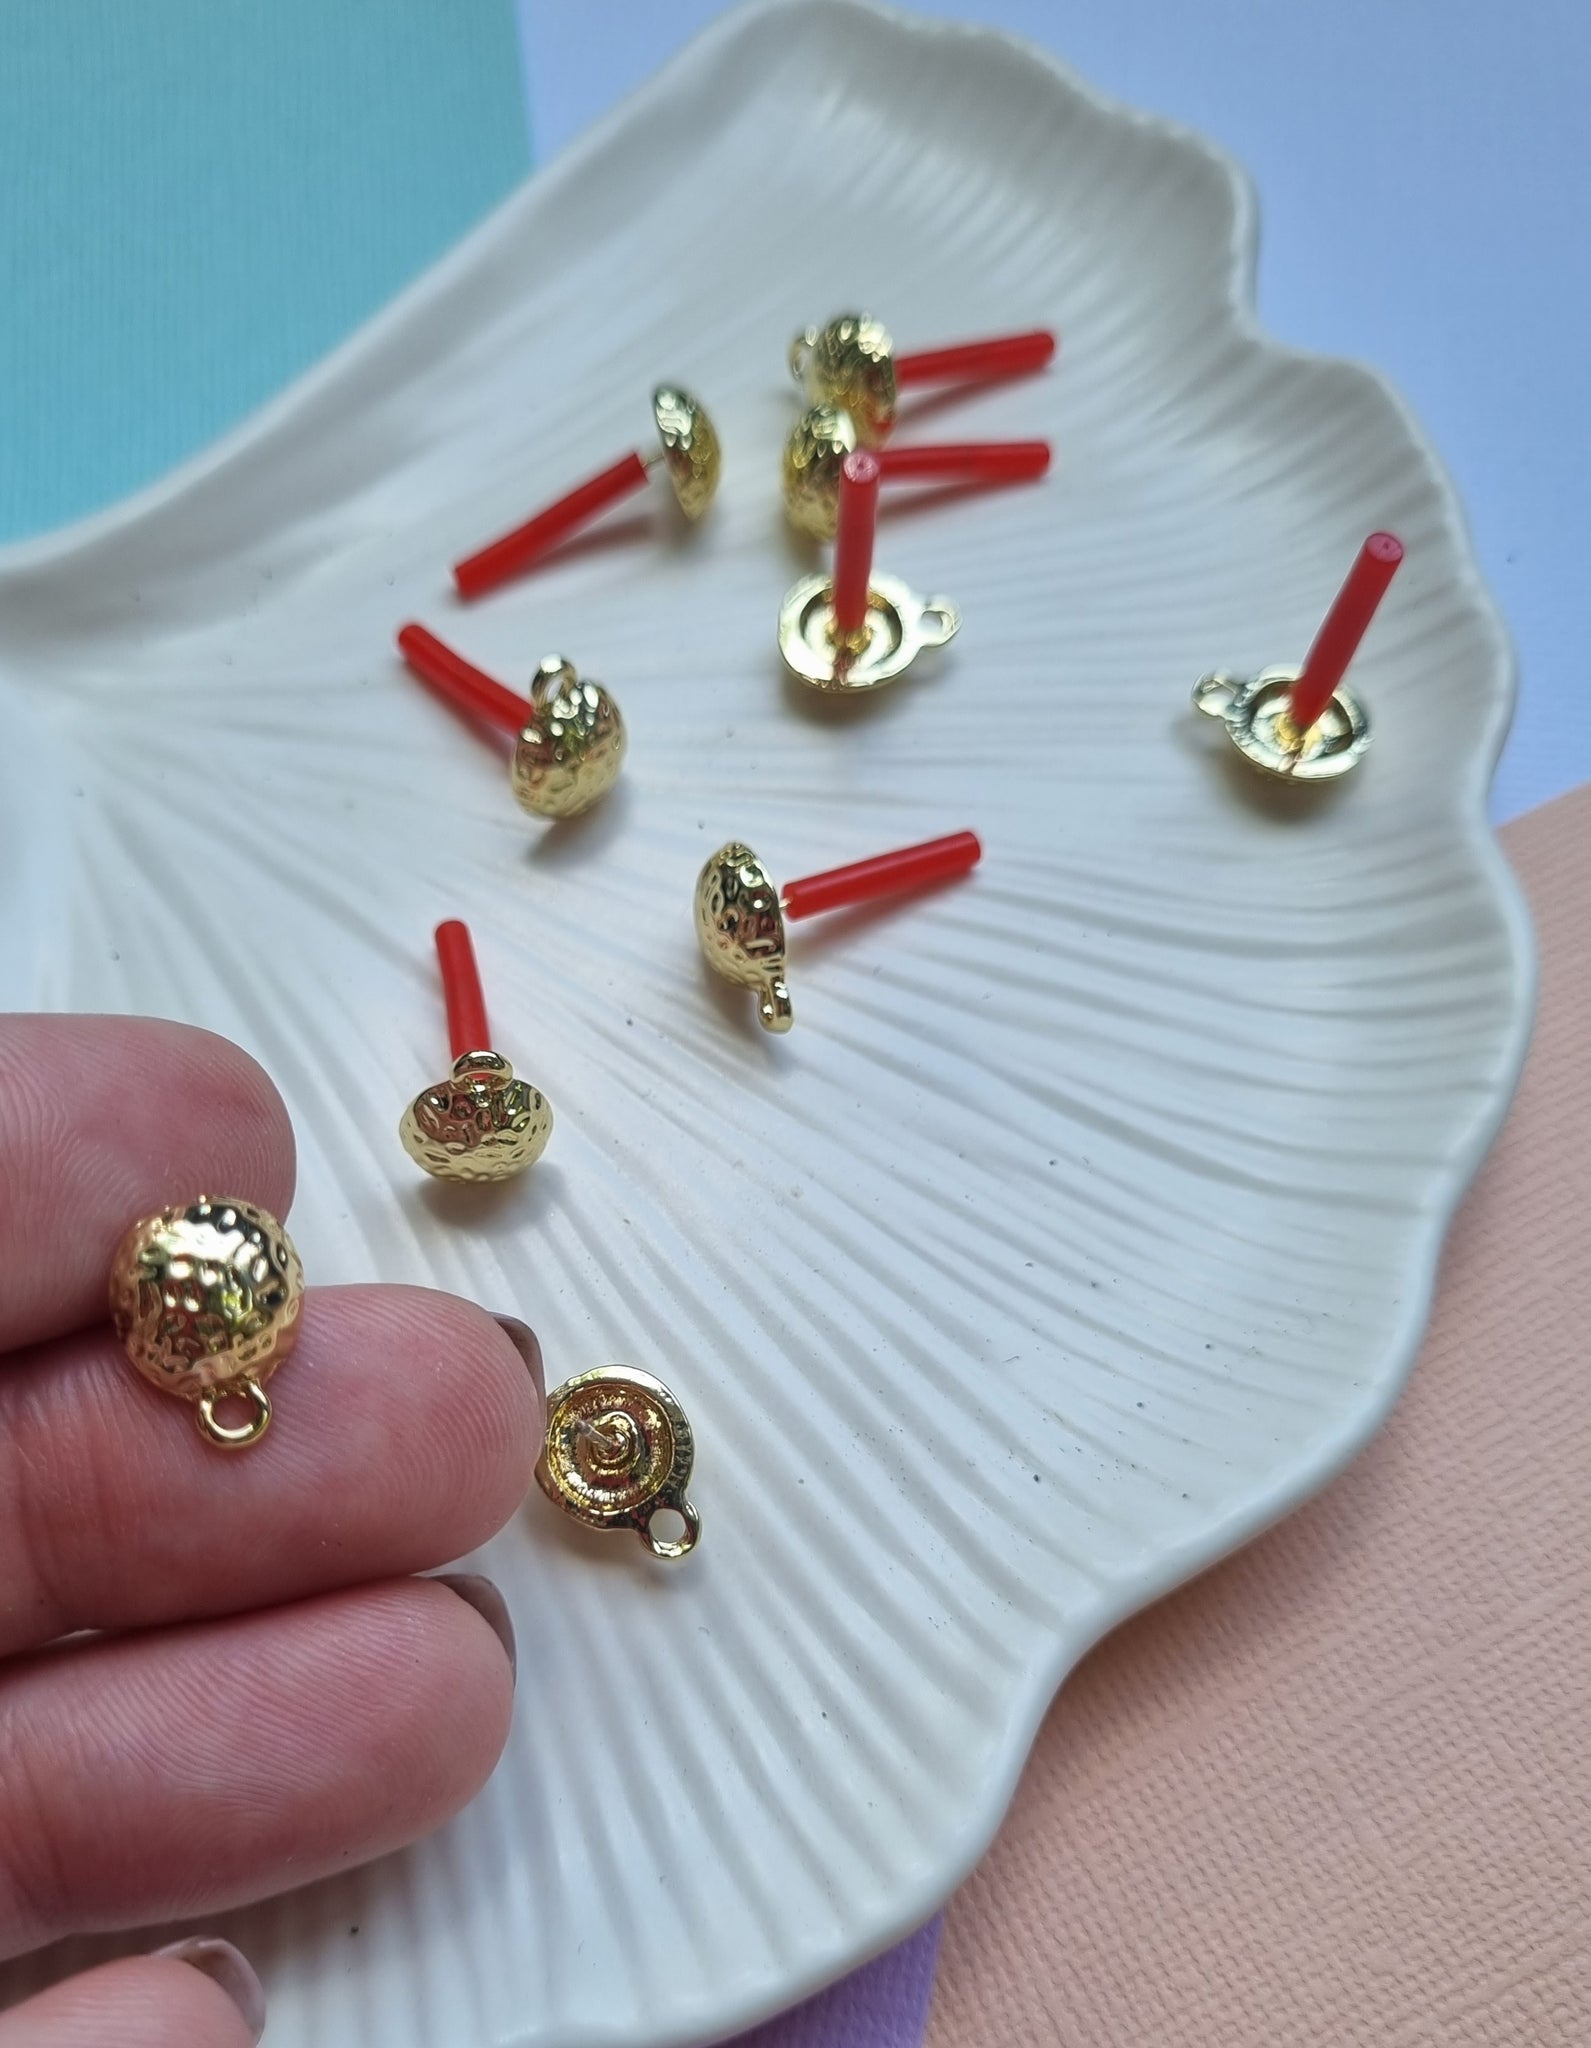 10mm 10pcs (5prs) Zinc Alloy Stud, Gold Metal Earring, Round Earrings Base, Earring Connectors, DIY Drop Earrings, Jewellery Making Supplies